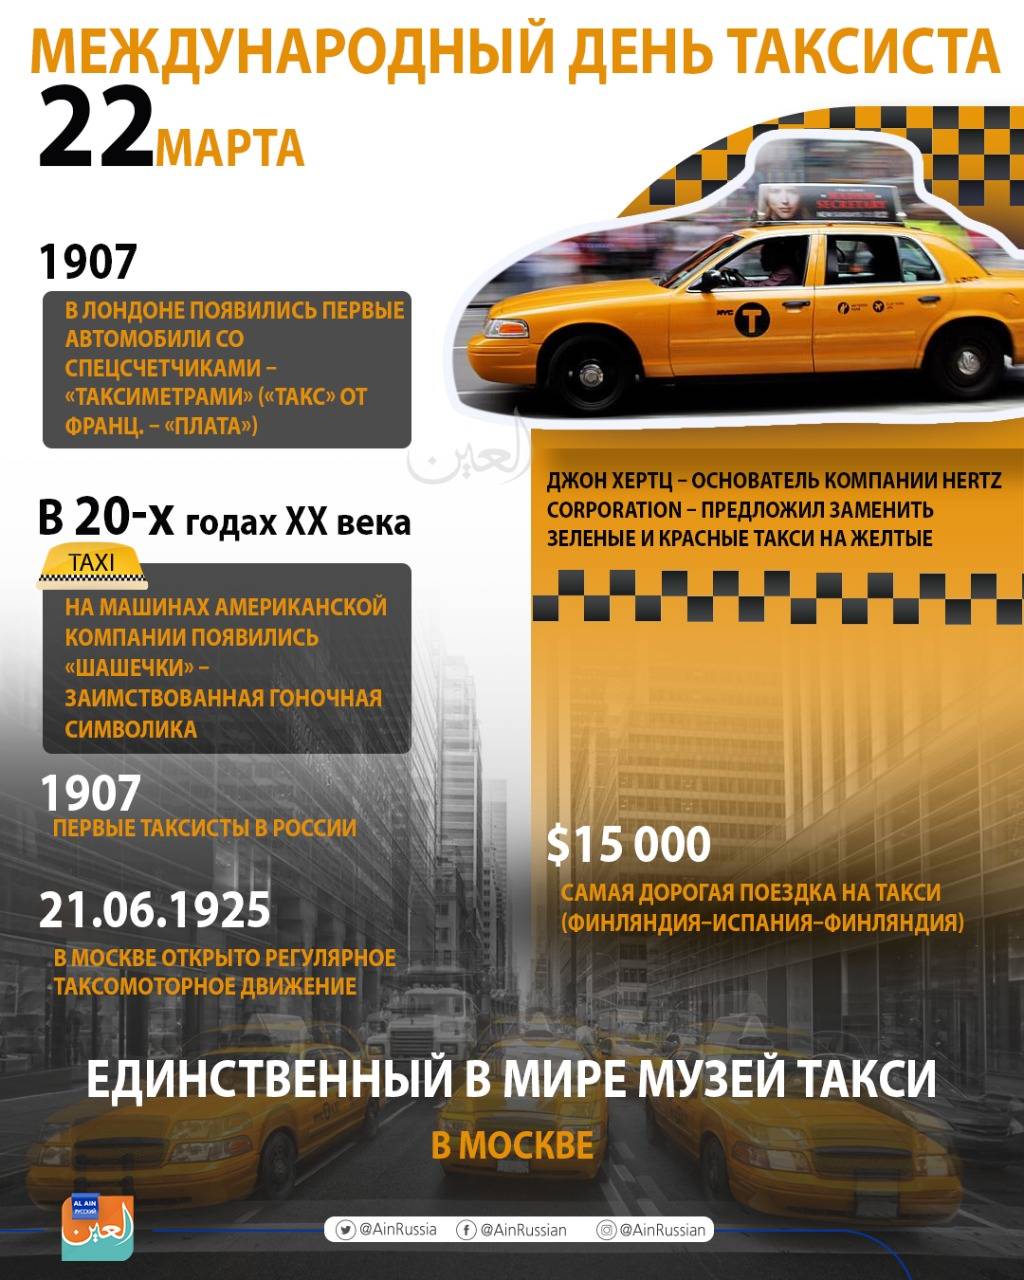 Международный день таксиста отмечается во всем мире 22 марта 2019 года